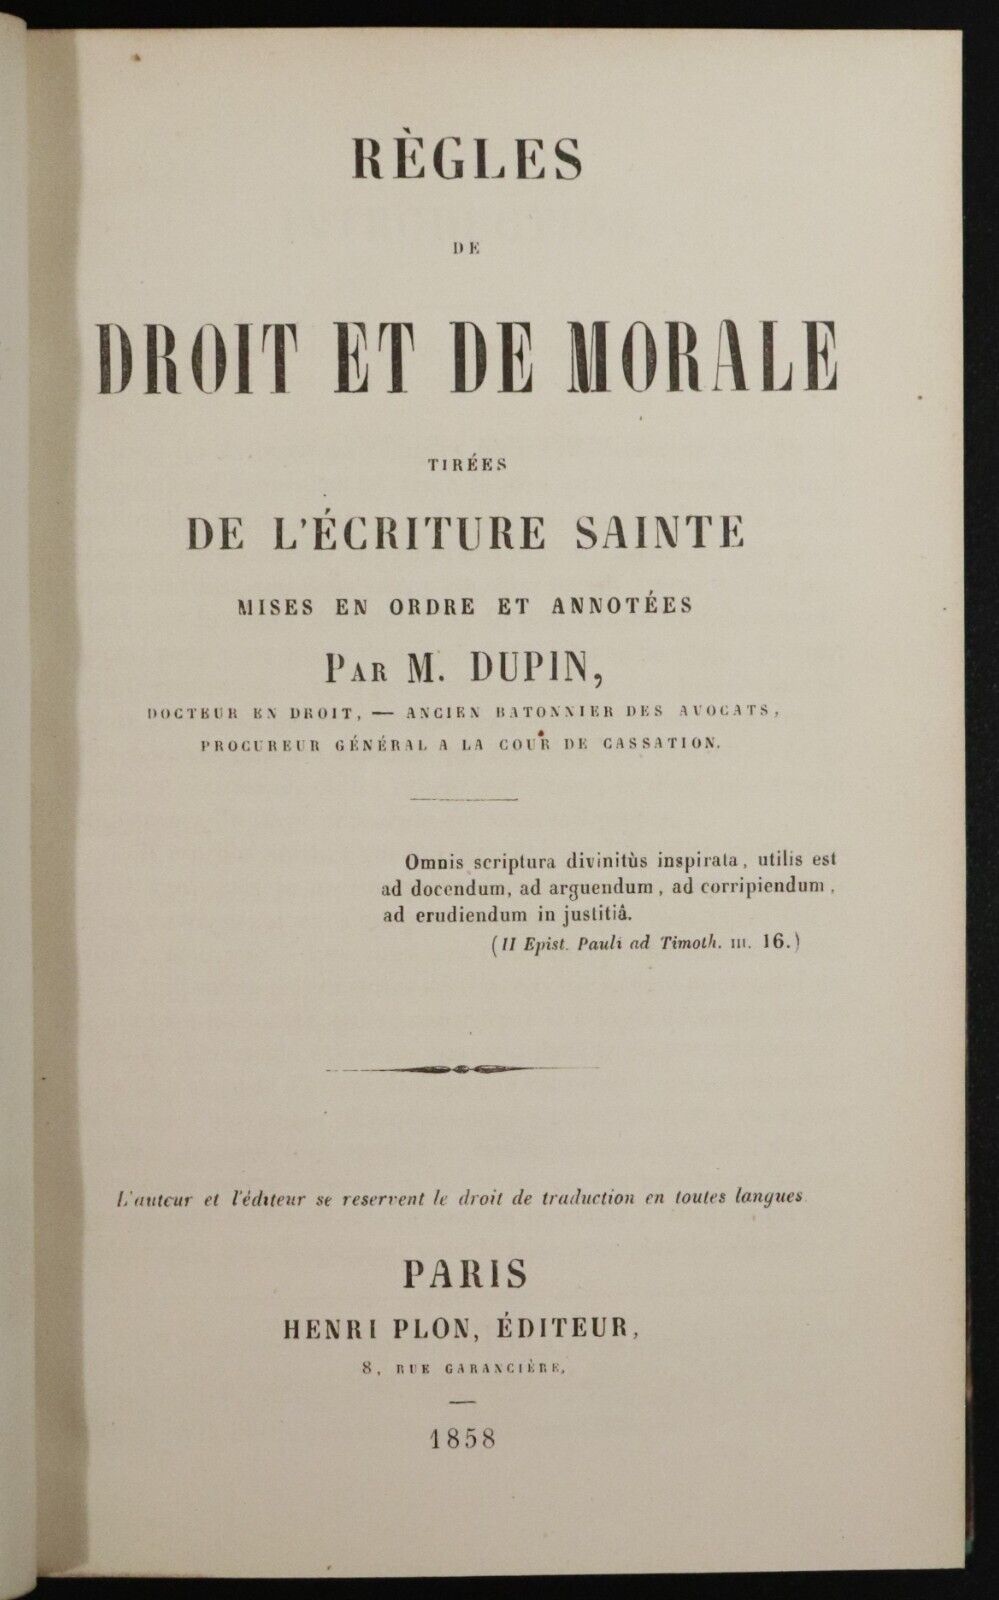 1858 Règles de Droit et de Morale by M. Dupin Antiquarian French Theology Book - 0